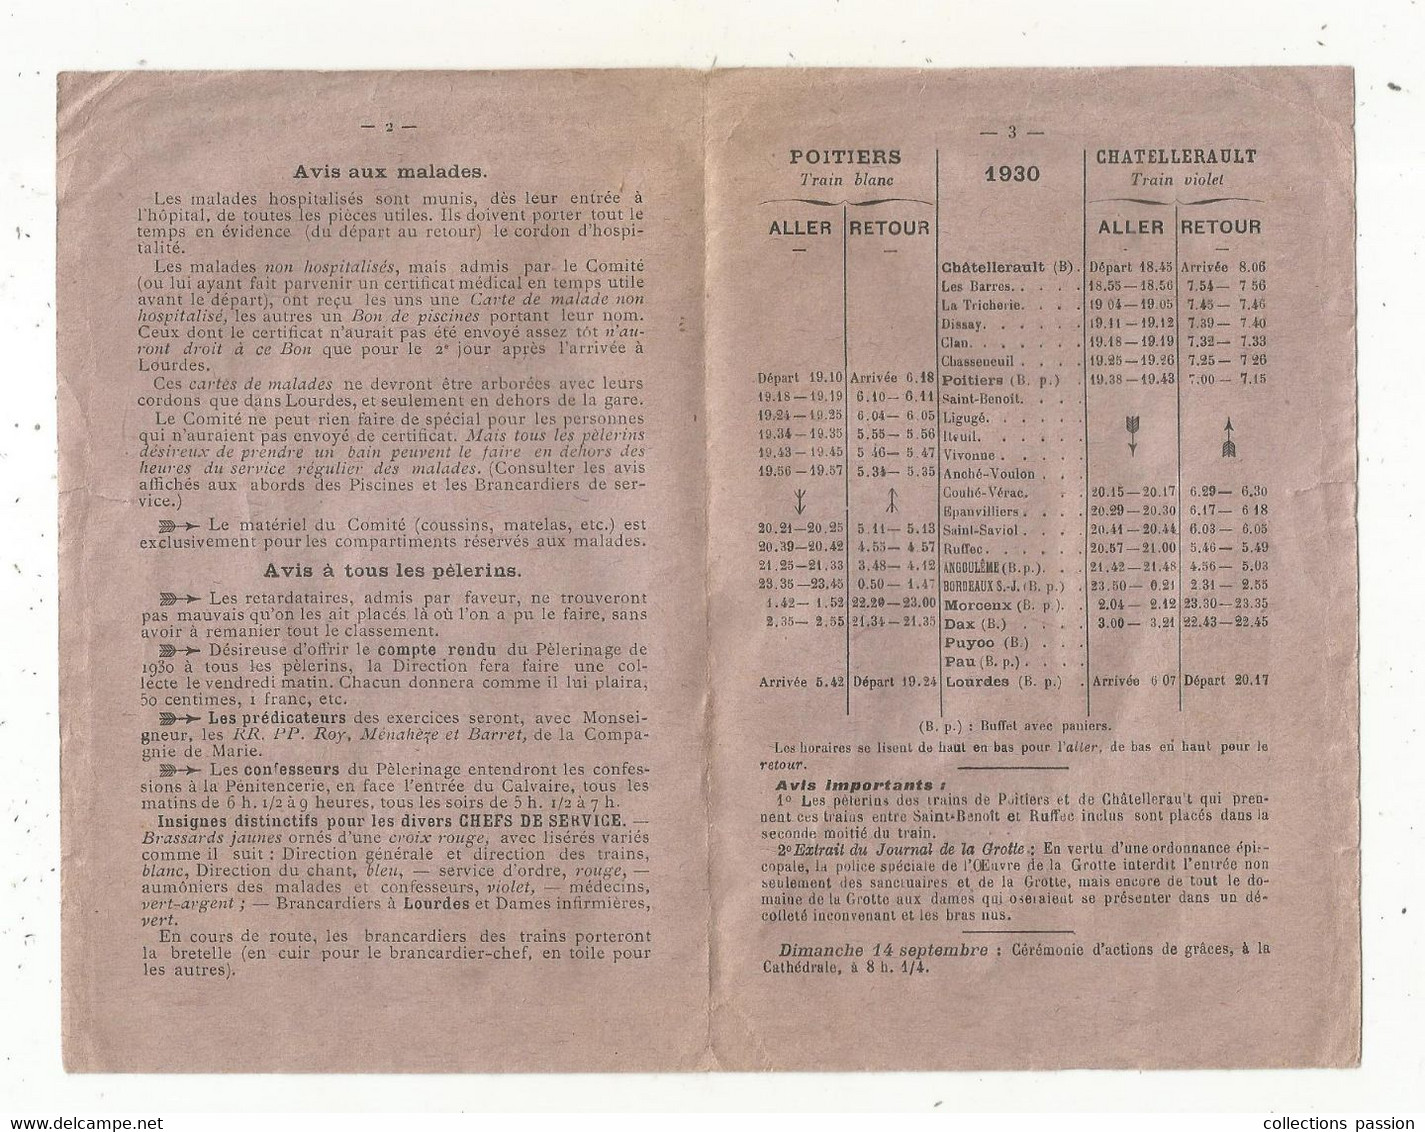 JC , Chemin De Fer, Horaires Des Trains , CHATELLERAULT, Vienne , Pélerinage Du Poitou , 1930, 3 Scans , Frais Fr 1.65 E - Railway